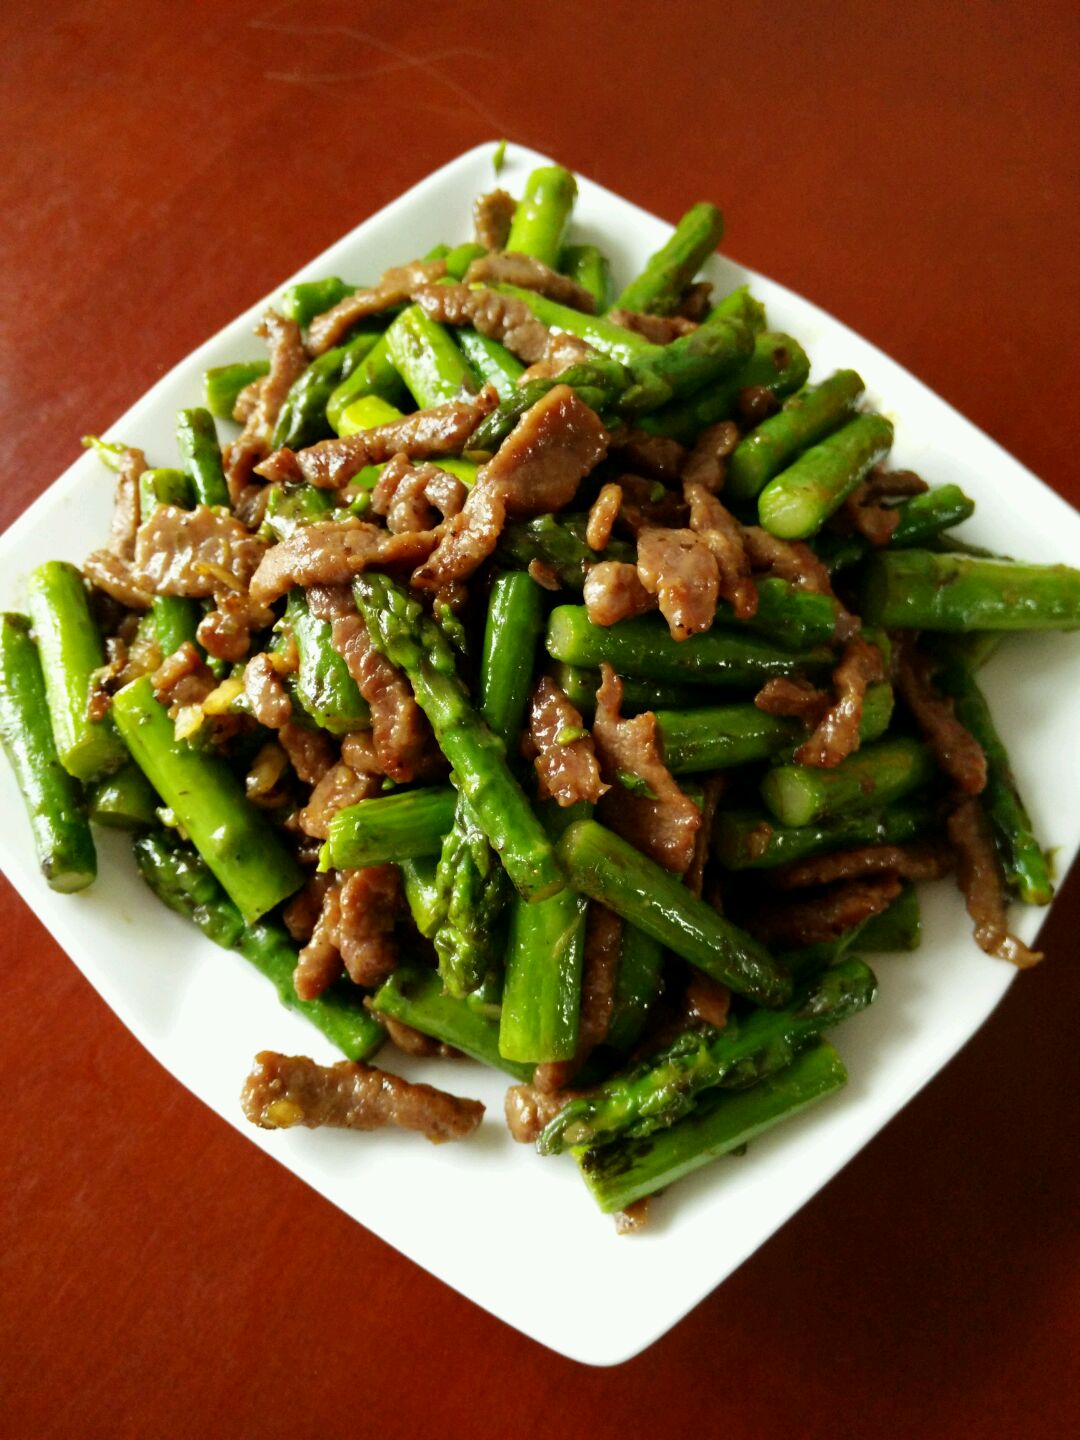 绿芦笋炒肉片,绿芦笋炒肉片的家常做法 - 美食杰绿芦笋炒肉片做法大全